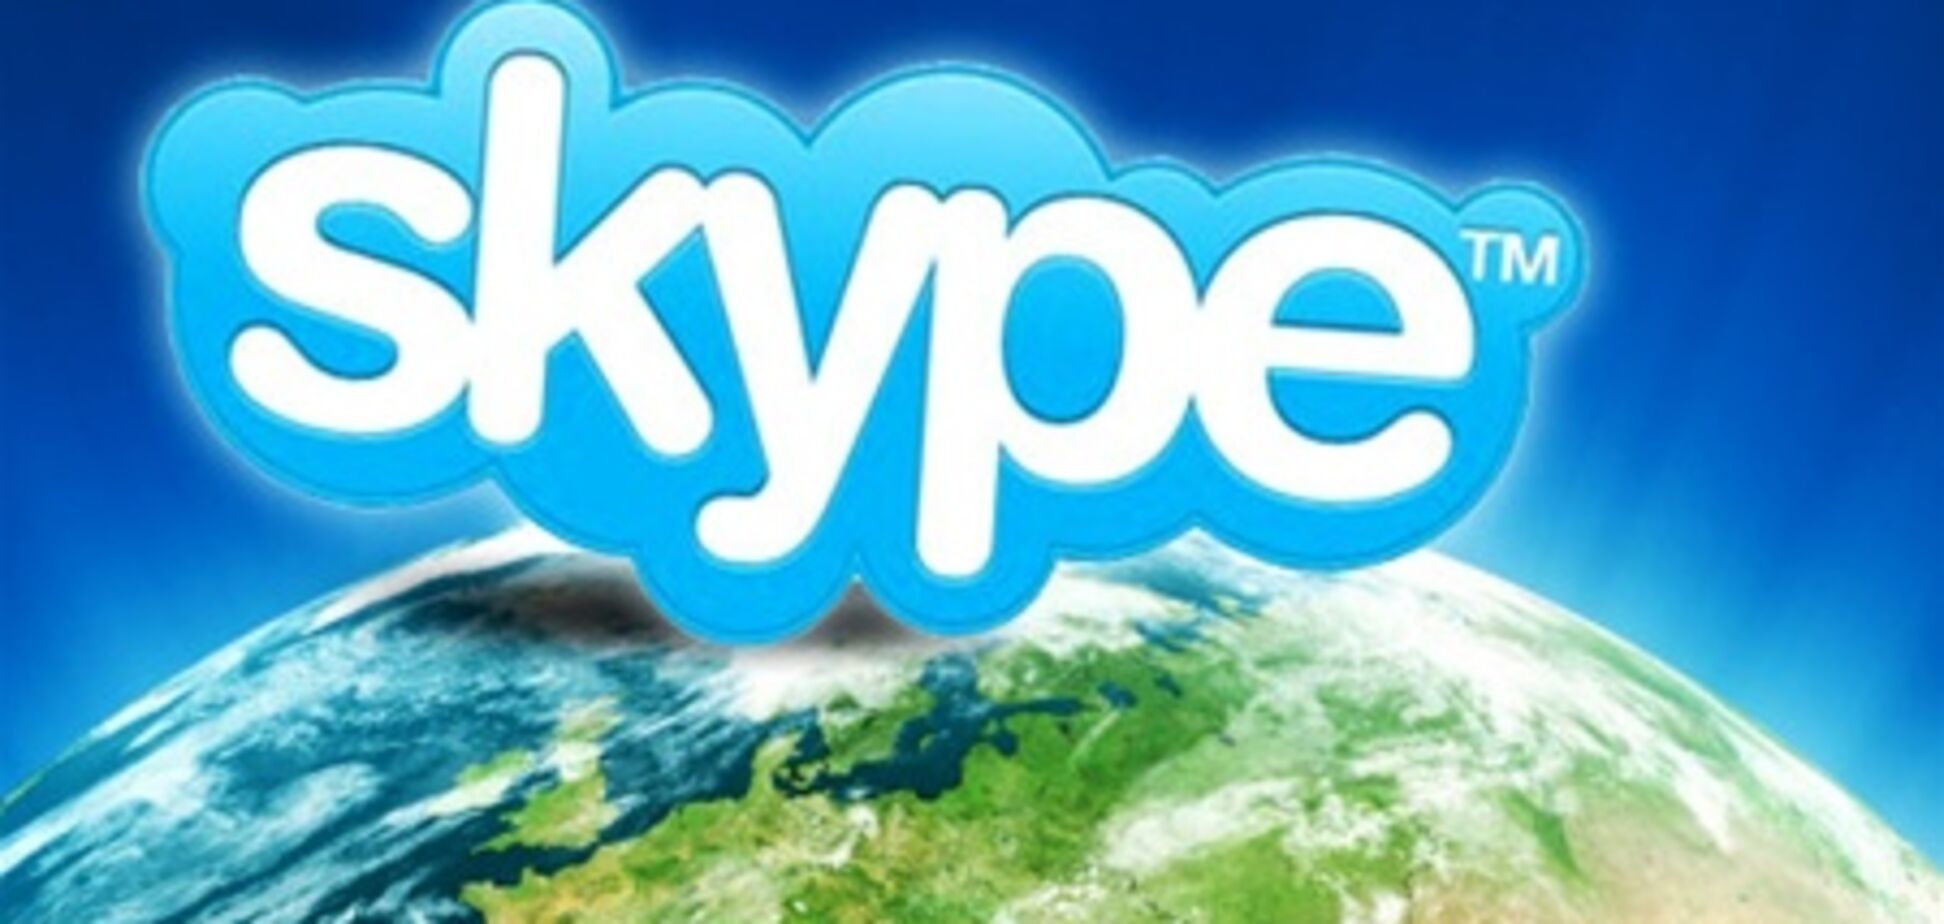 Предприниматели смогут получить консультацию через Skype